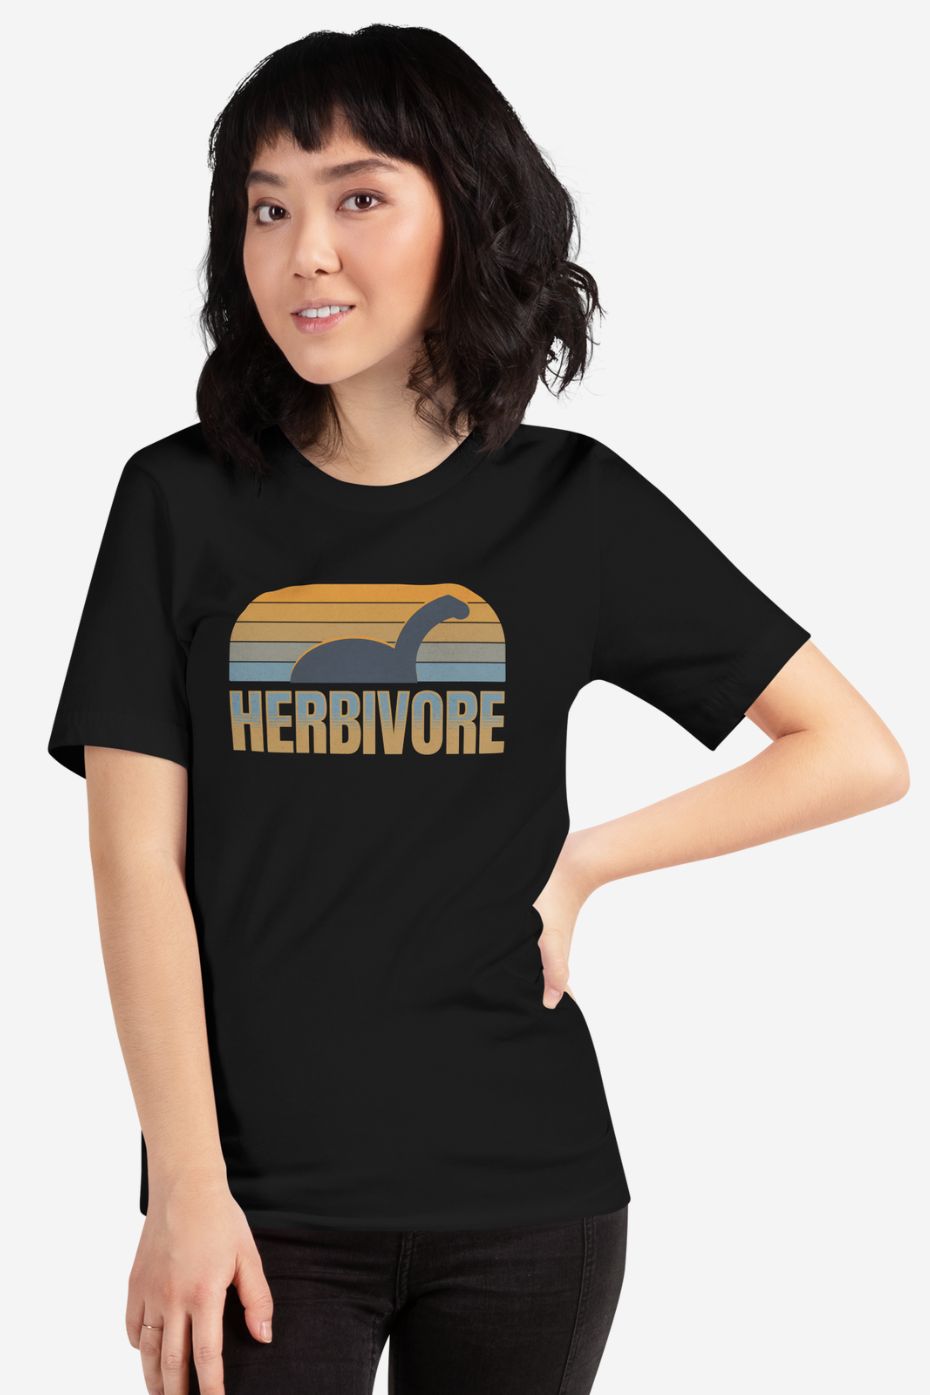 Herbivore - Unisex t-shirt